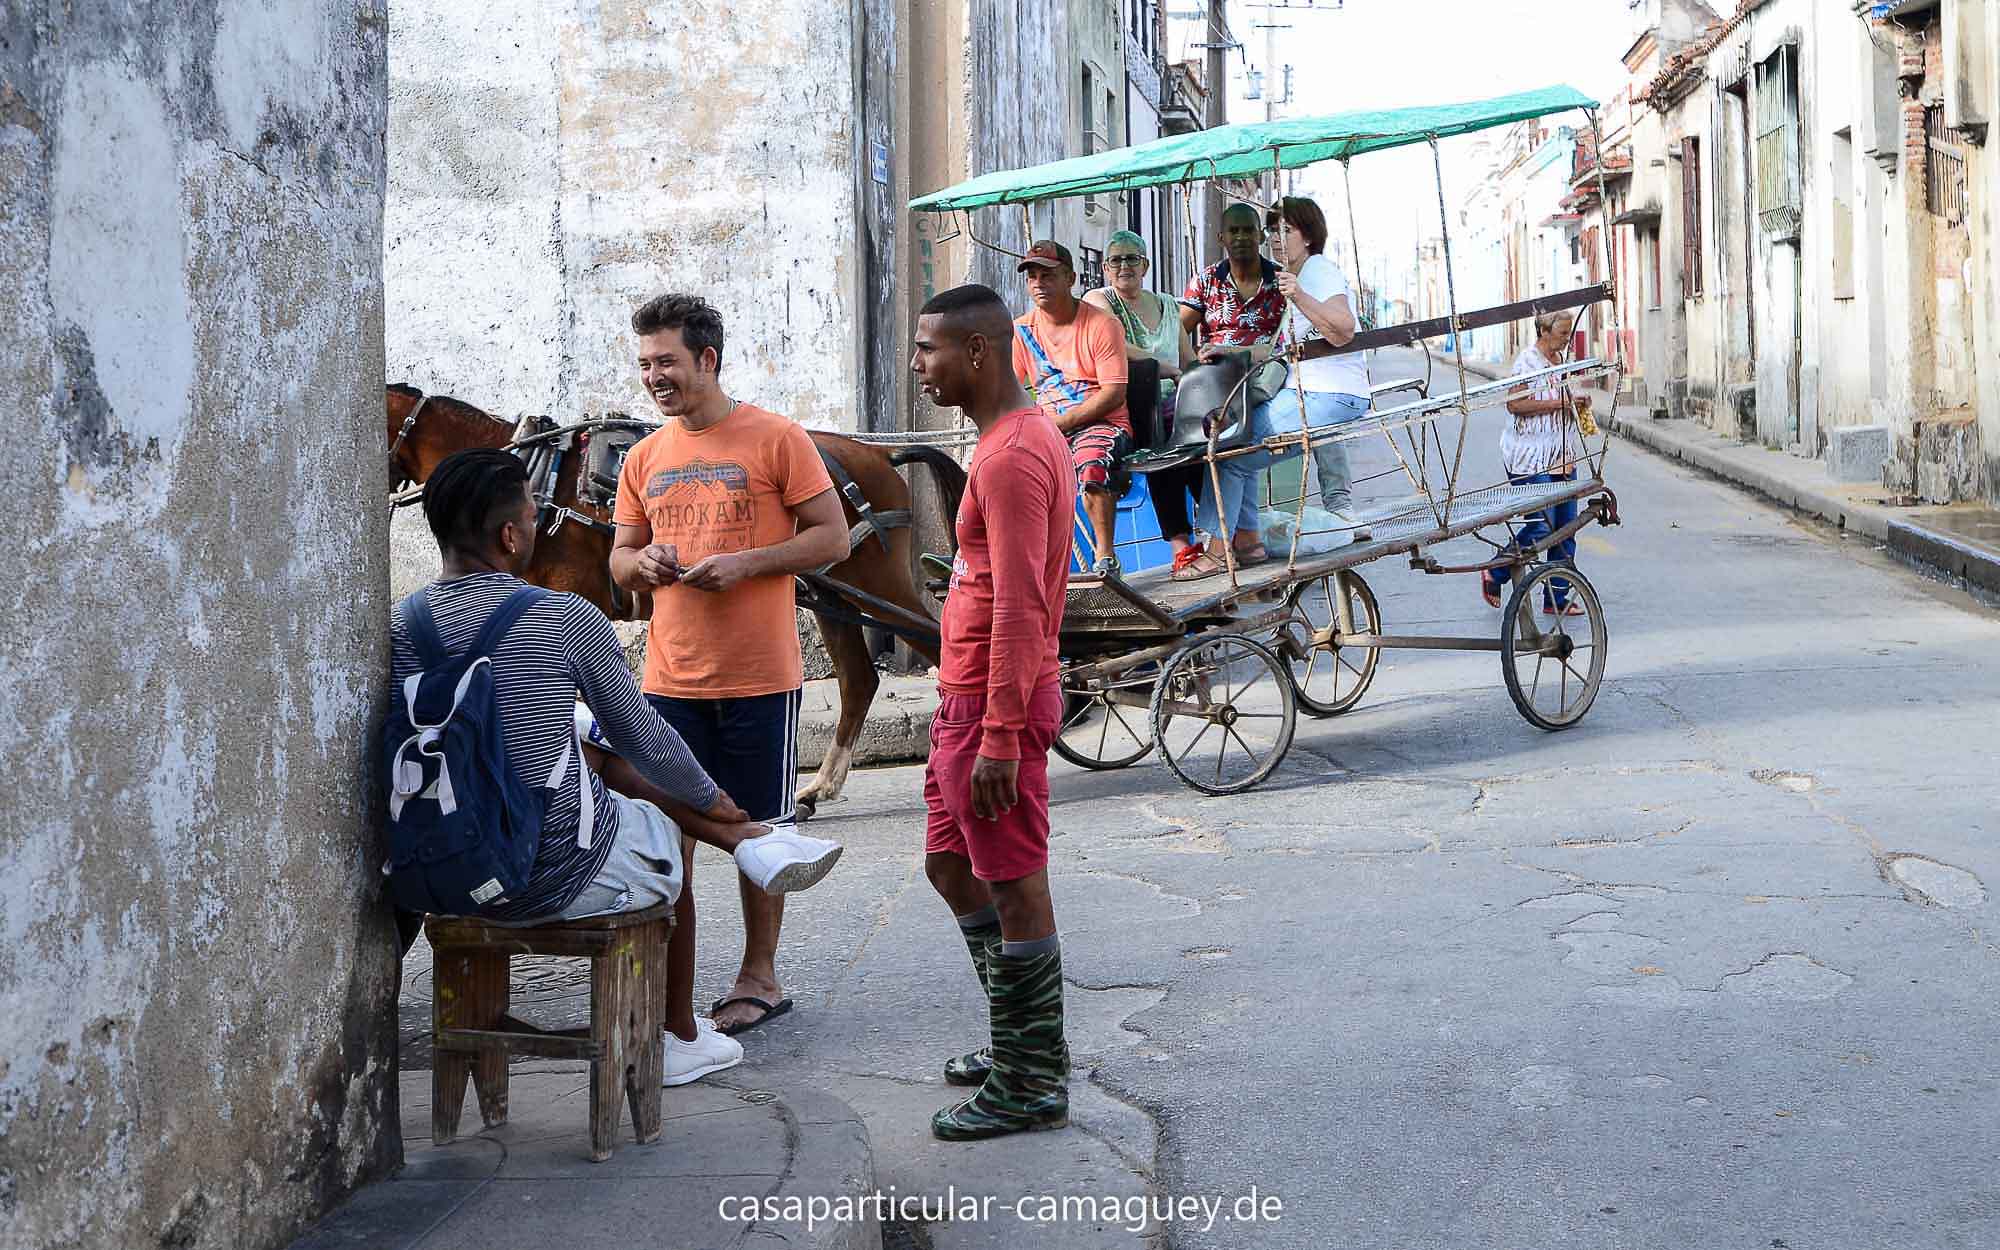 Typische Szene auf Kubas Straßen